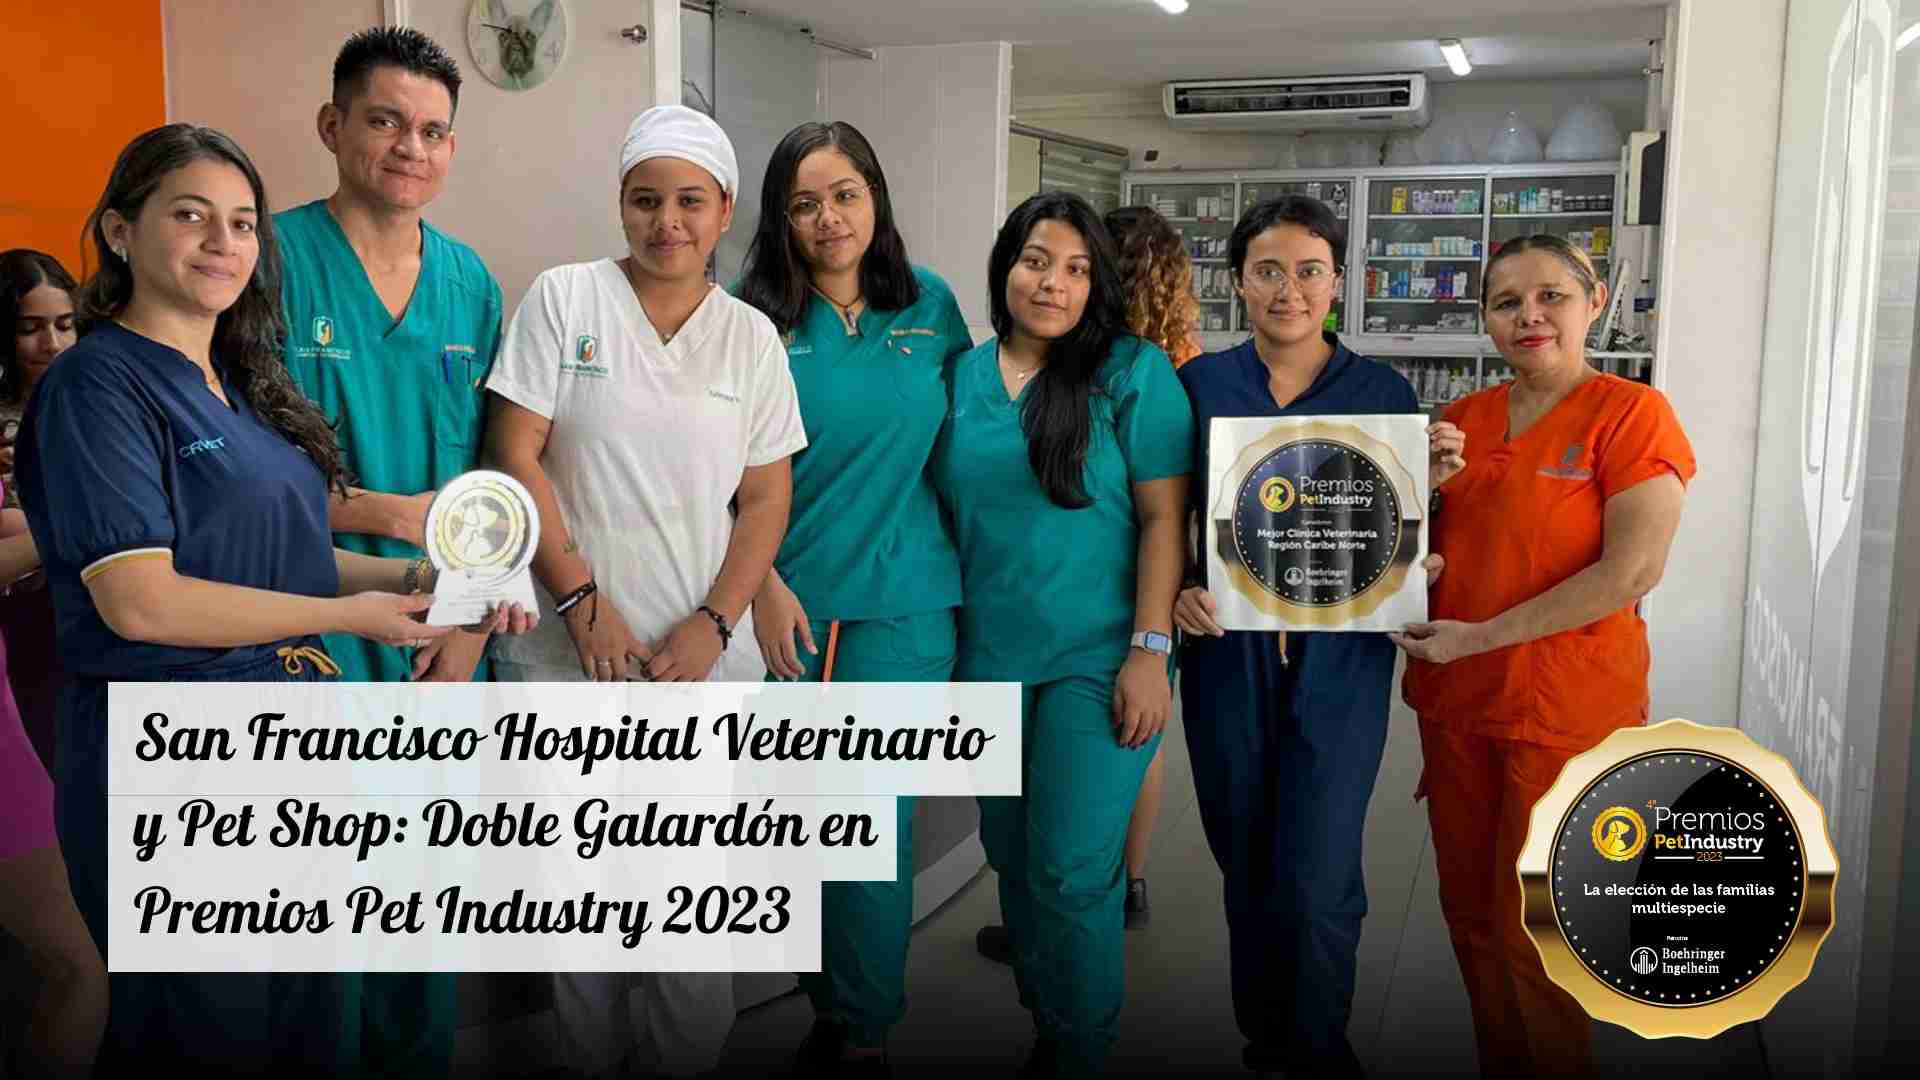 San Francisco Hospital Veterinario y Pet Shop: Doble Galardón en Premios Pet Industry 2023